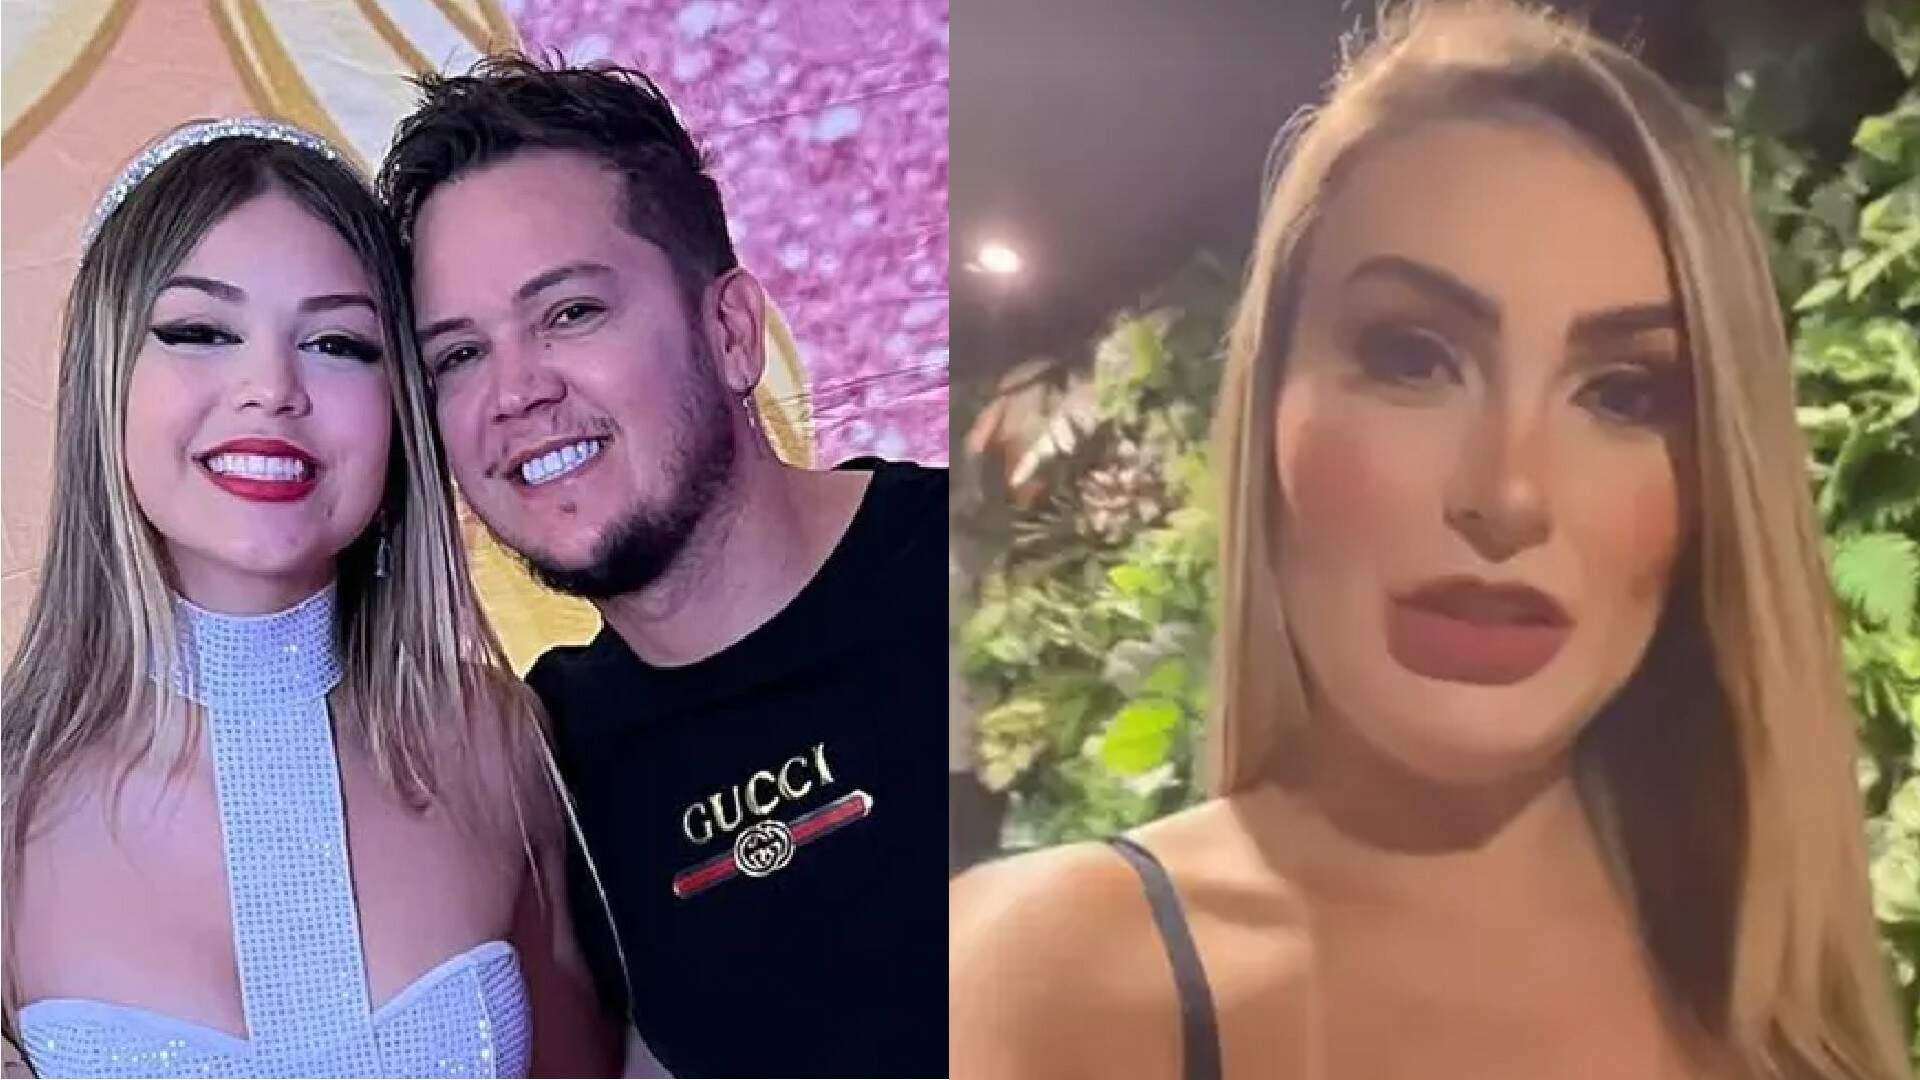 Pai de Melody alfineta Andressa Urach com declaração polêmica após modelo detonar jovem cantora em show - Metropolitana FM